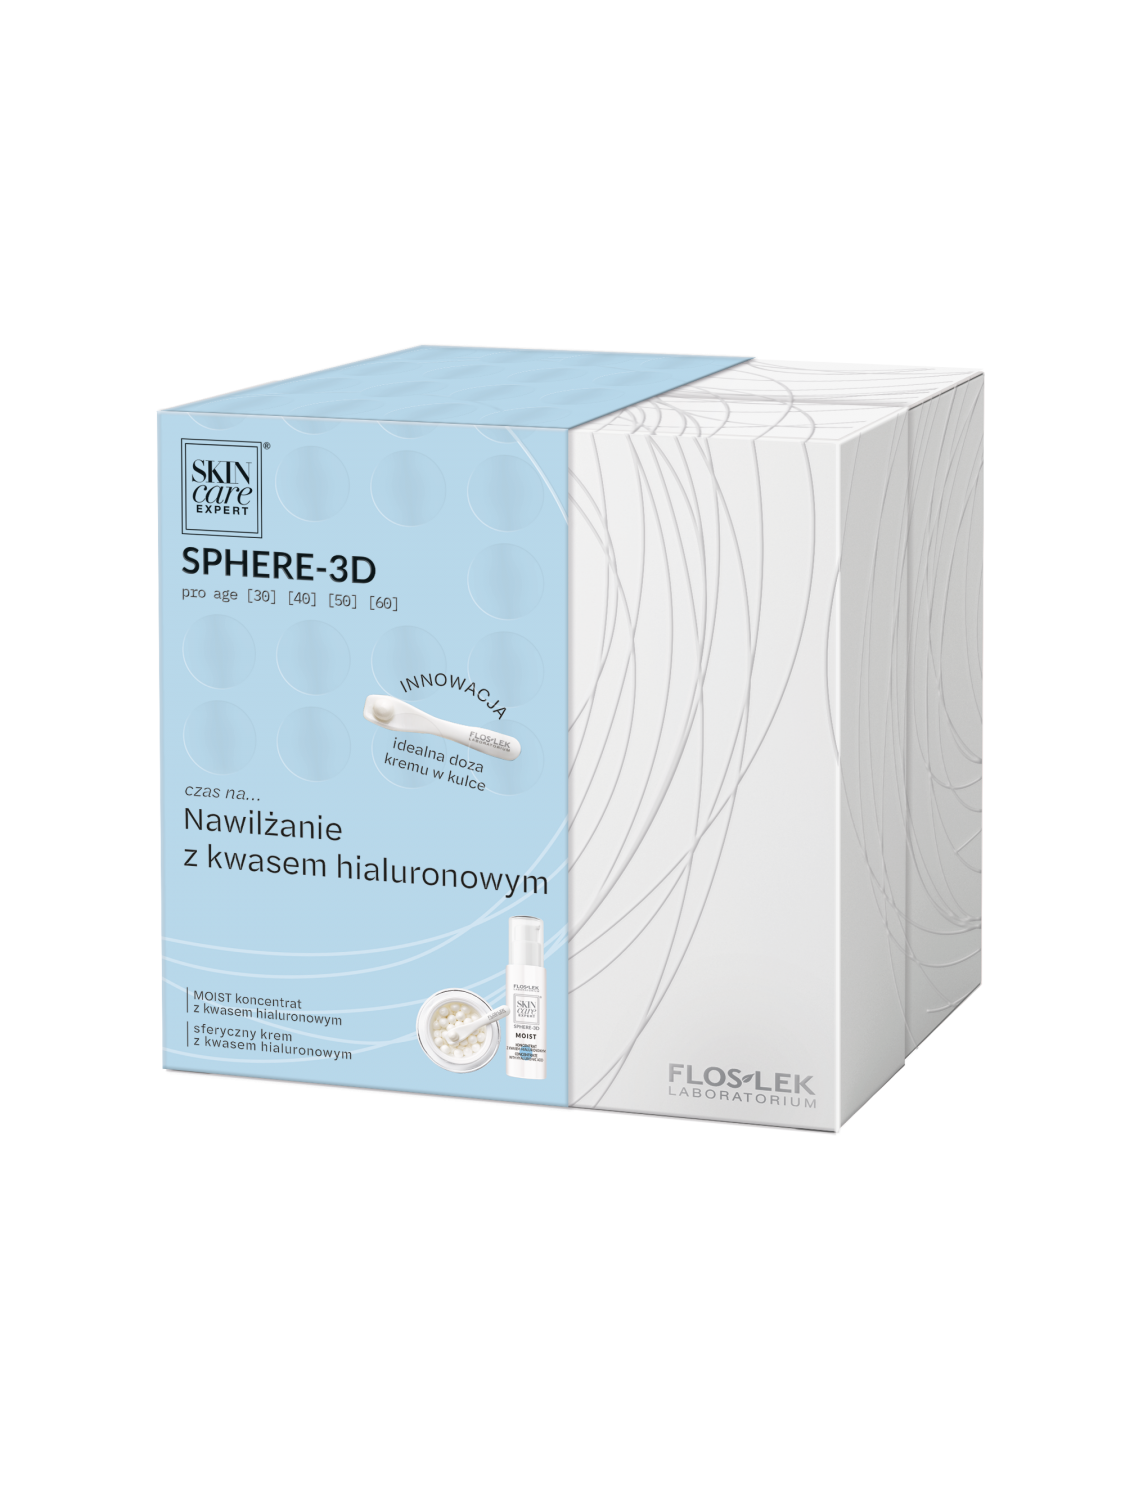 SKIN CARE EXPERT® SPHERE-3D Zestaw Sferyczny krem z kwasem hialuronowym i Koncentrat z kwasem hialuronowym - Floslek